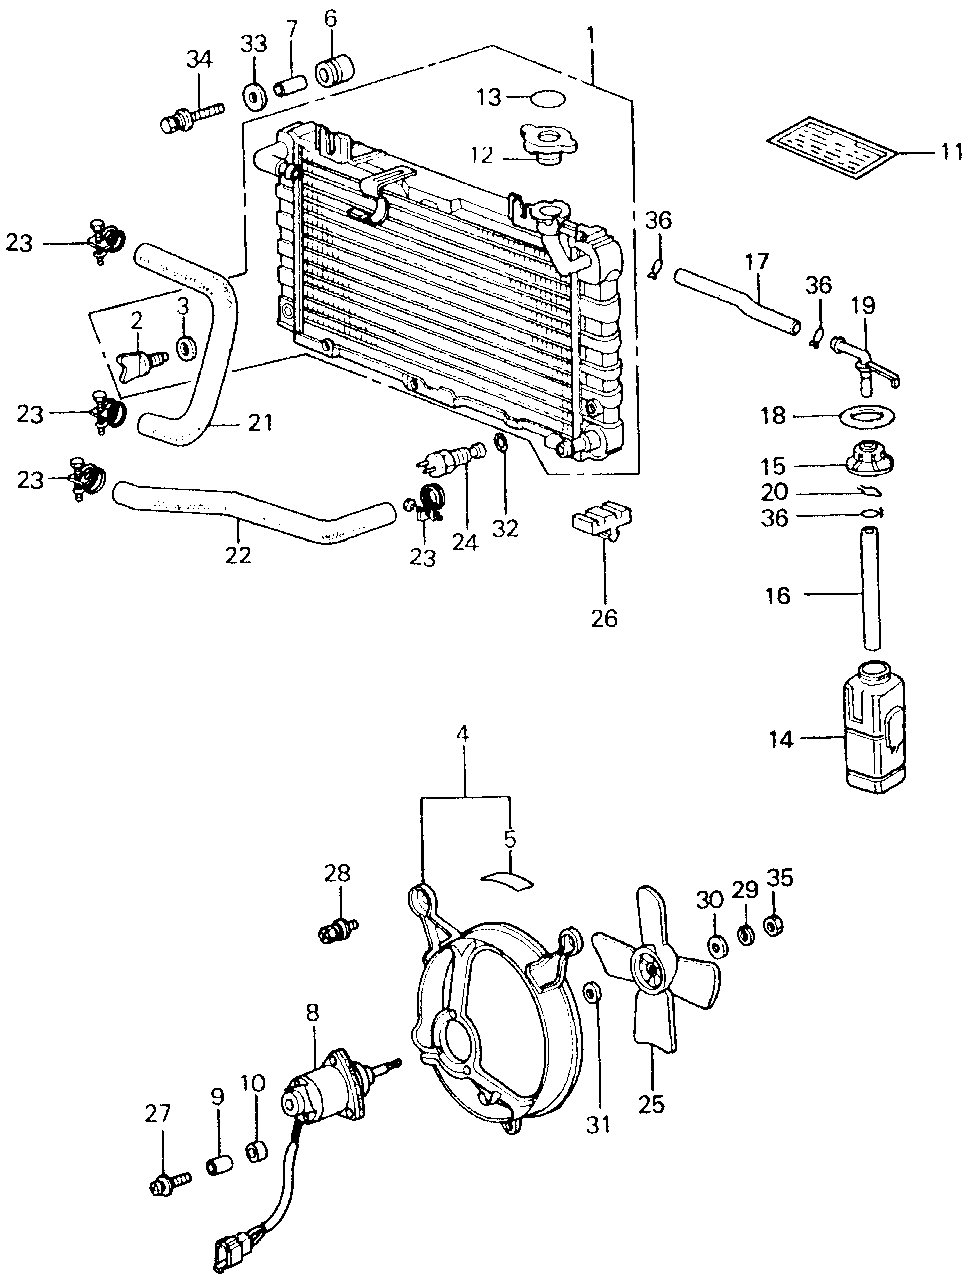 19010-PA6-004 - RADIATOR (TOYO)